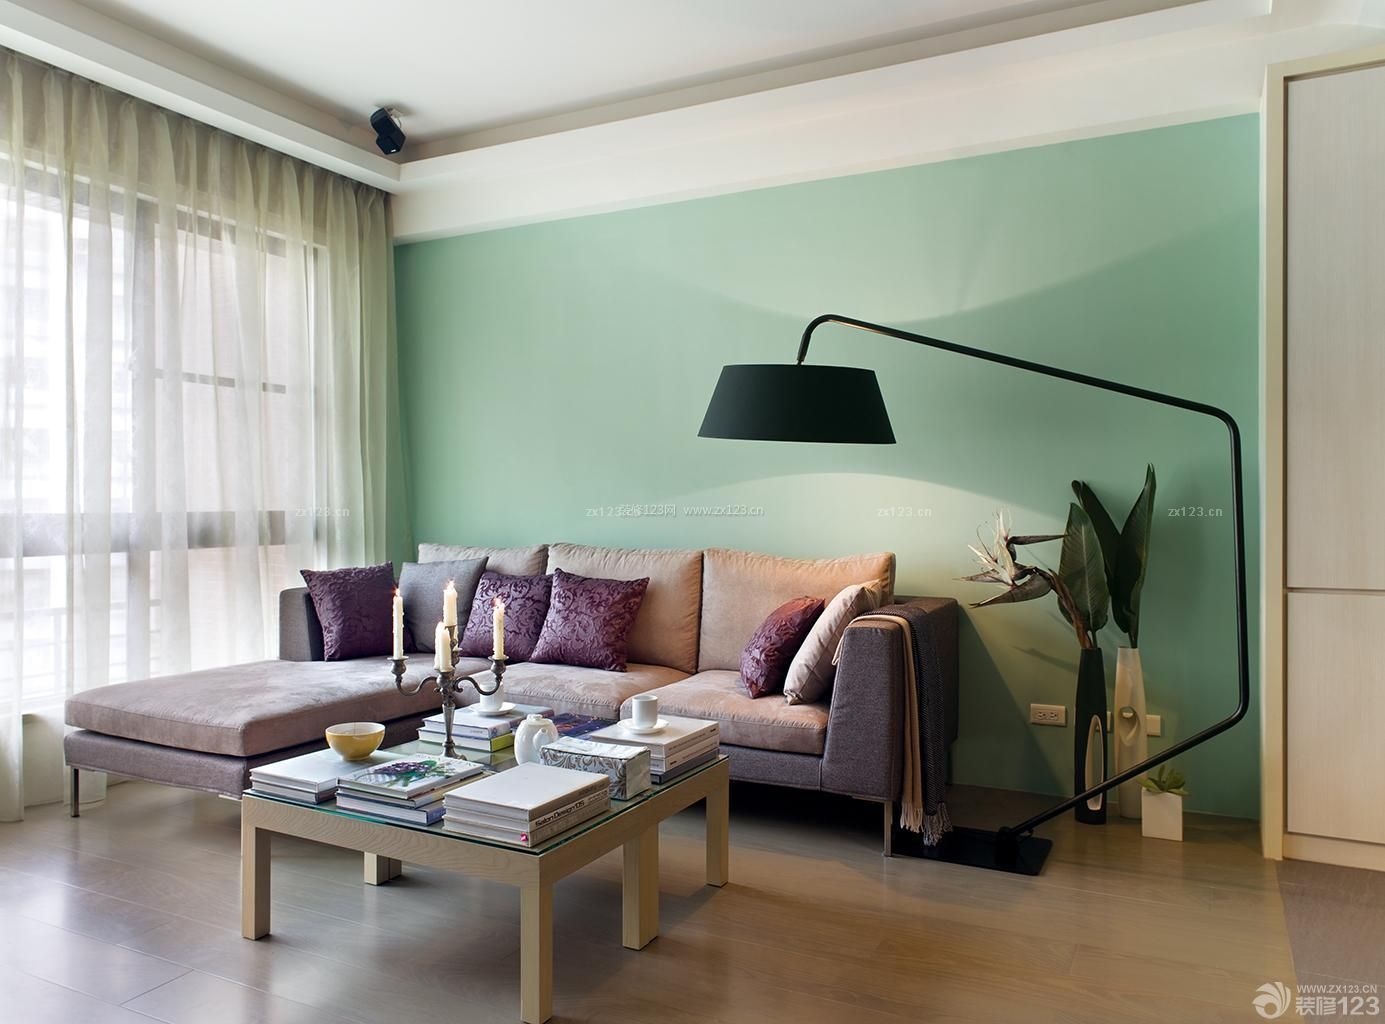 60平米一室一厅客厅绿色墙面设计图 